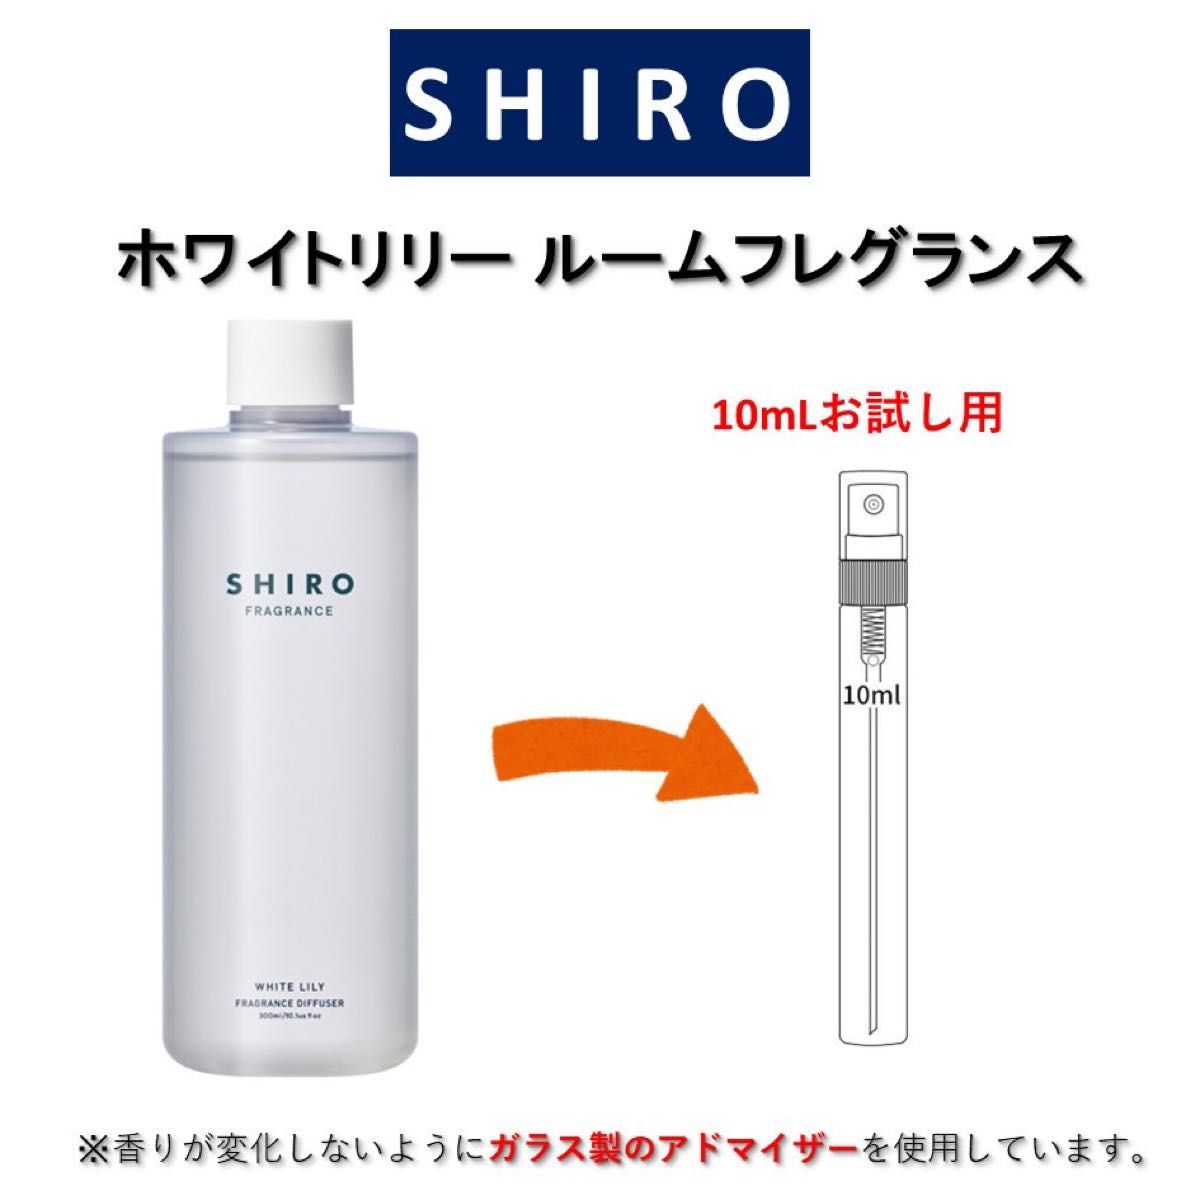 SHIRO ホワイトリリー ルームフレグランス お試しサンプル (10mL)